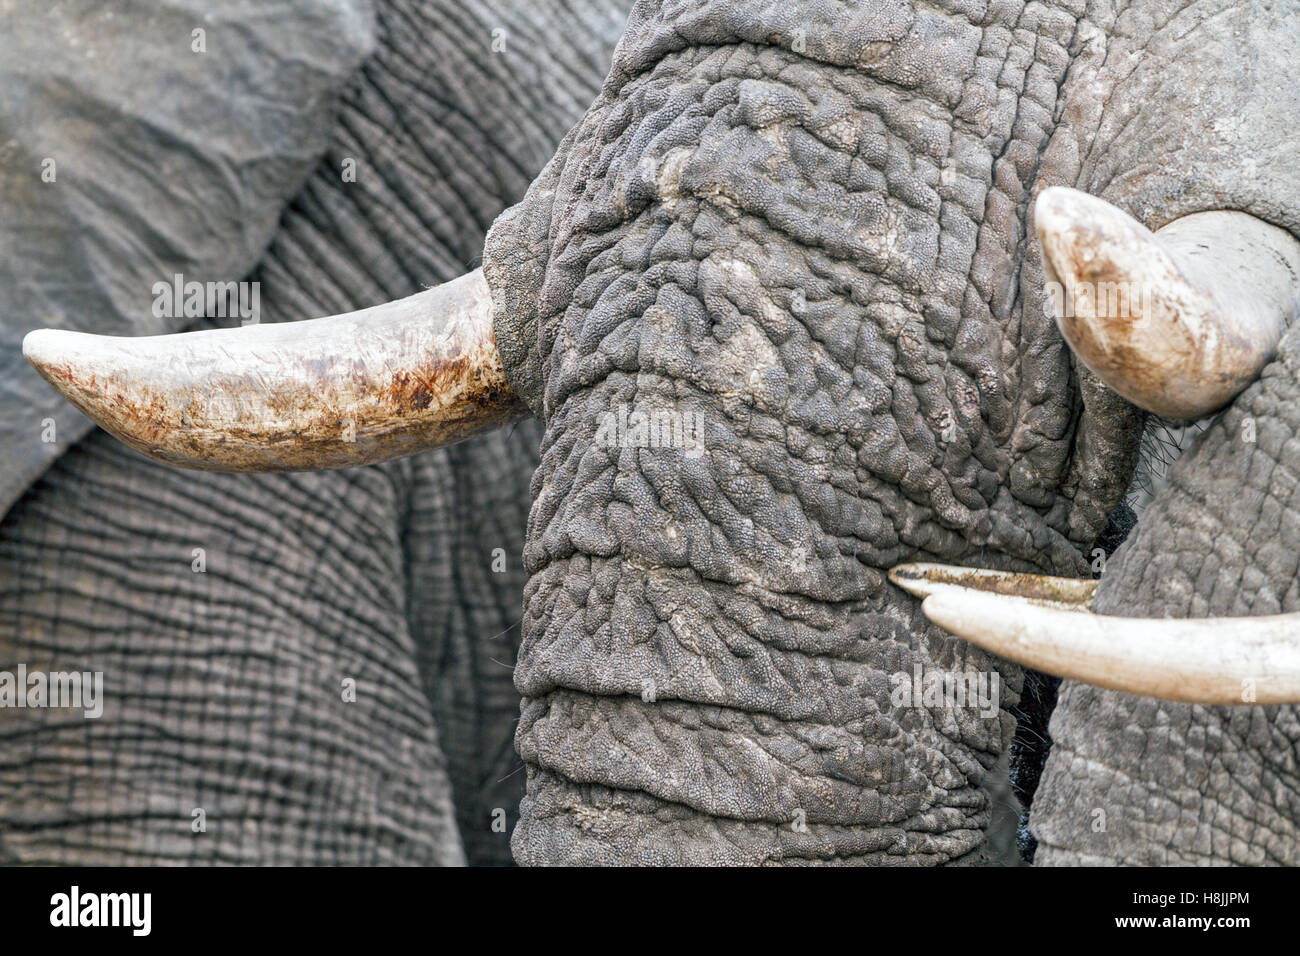 Partie d'une série d'images sur la complexité des interactions sociales de l'éléphant africain quand ils se rassemblent pour boire. Banque D'Images